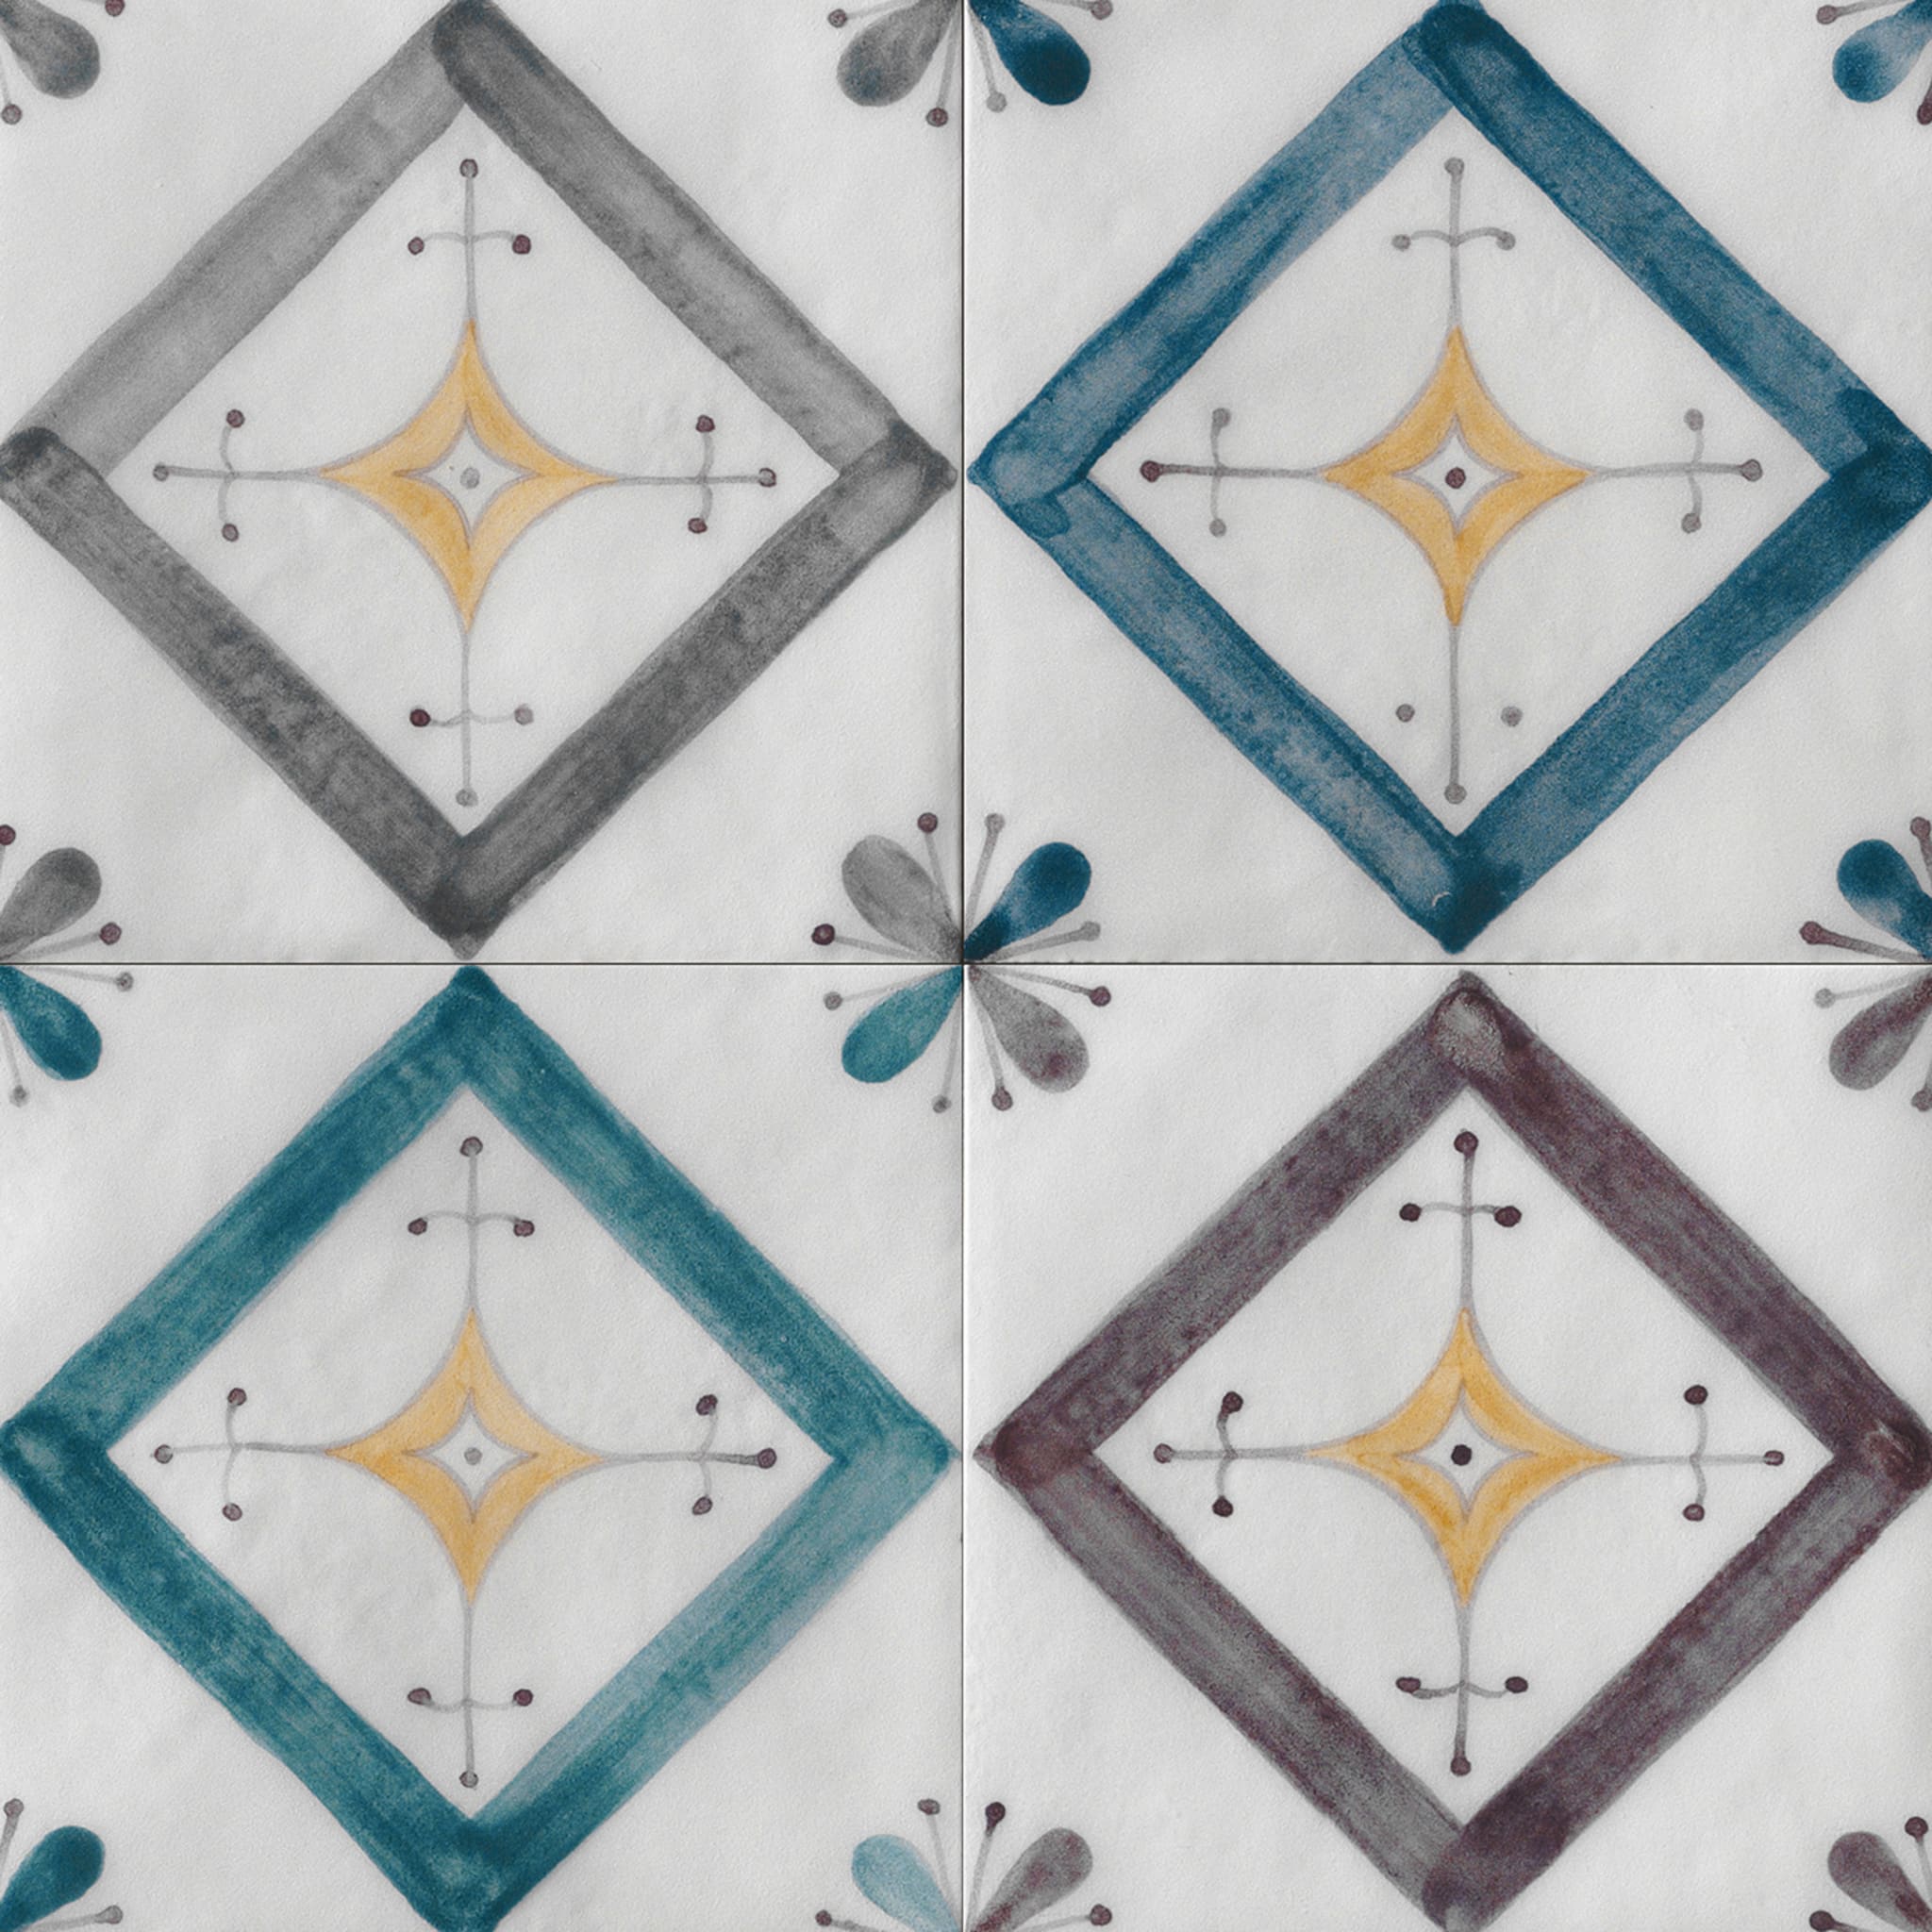 Ot Isuledda Plum Set of 24 Square Tiles - Alternative view 1